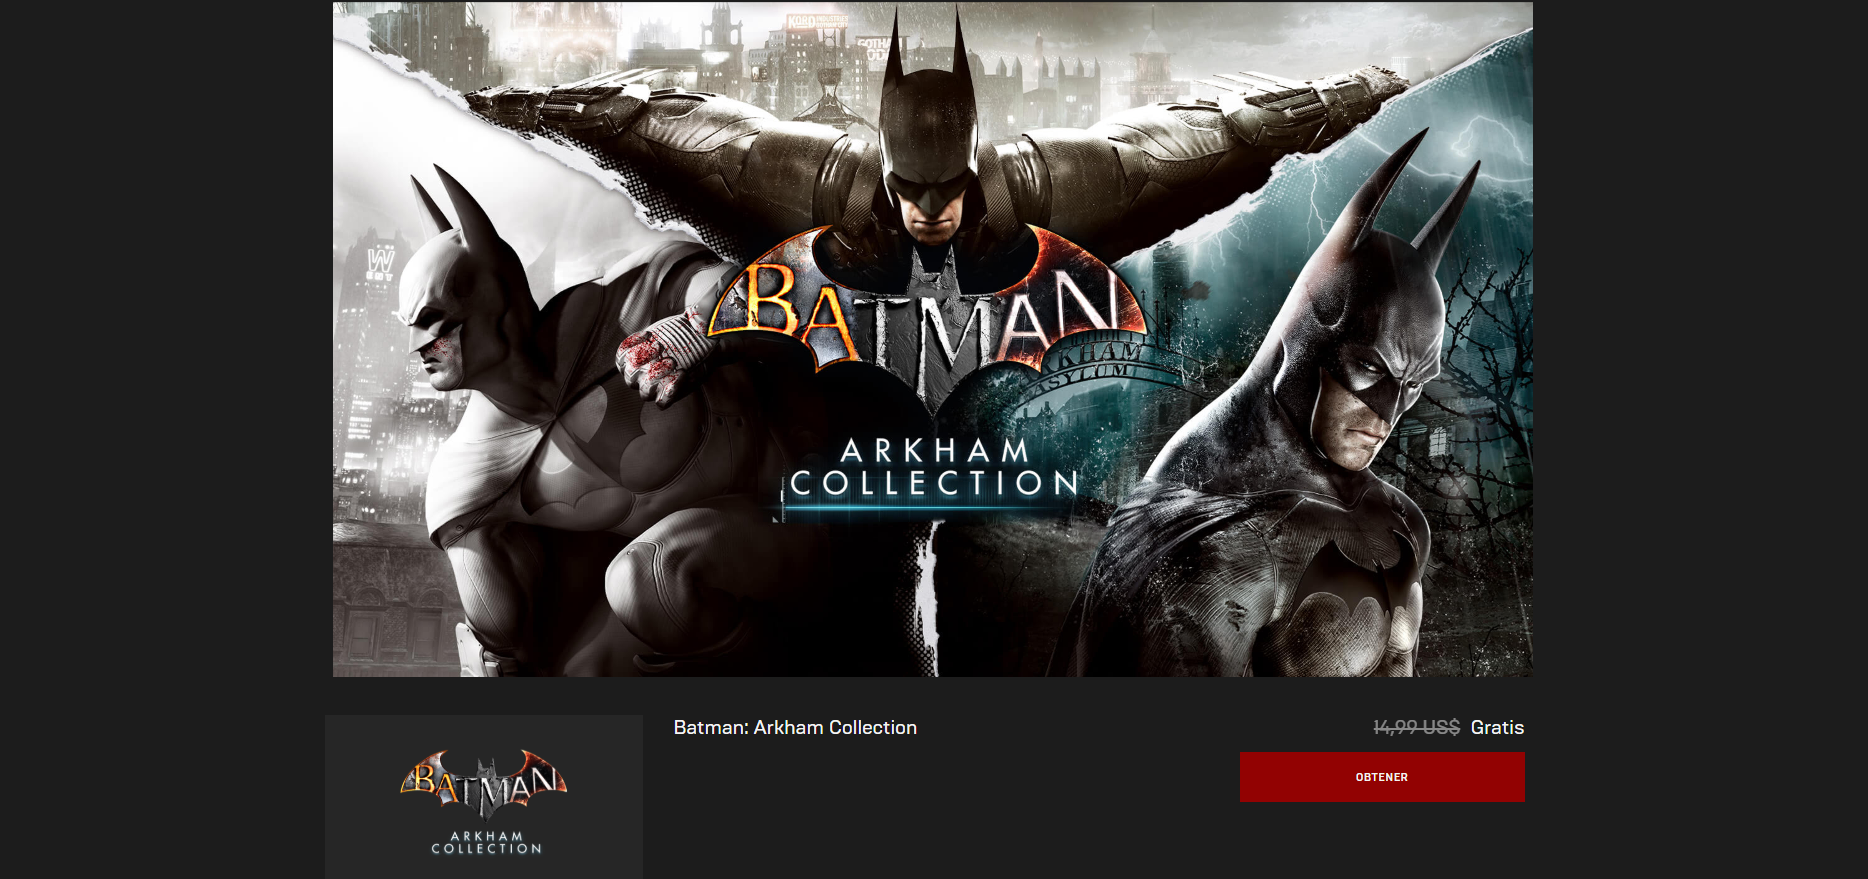 Siguen los festejos para los fans de Batman: Epic Store regala las trilogías Arkham y Lego